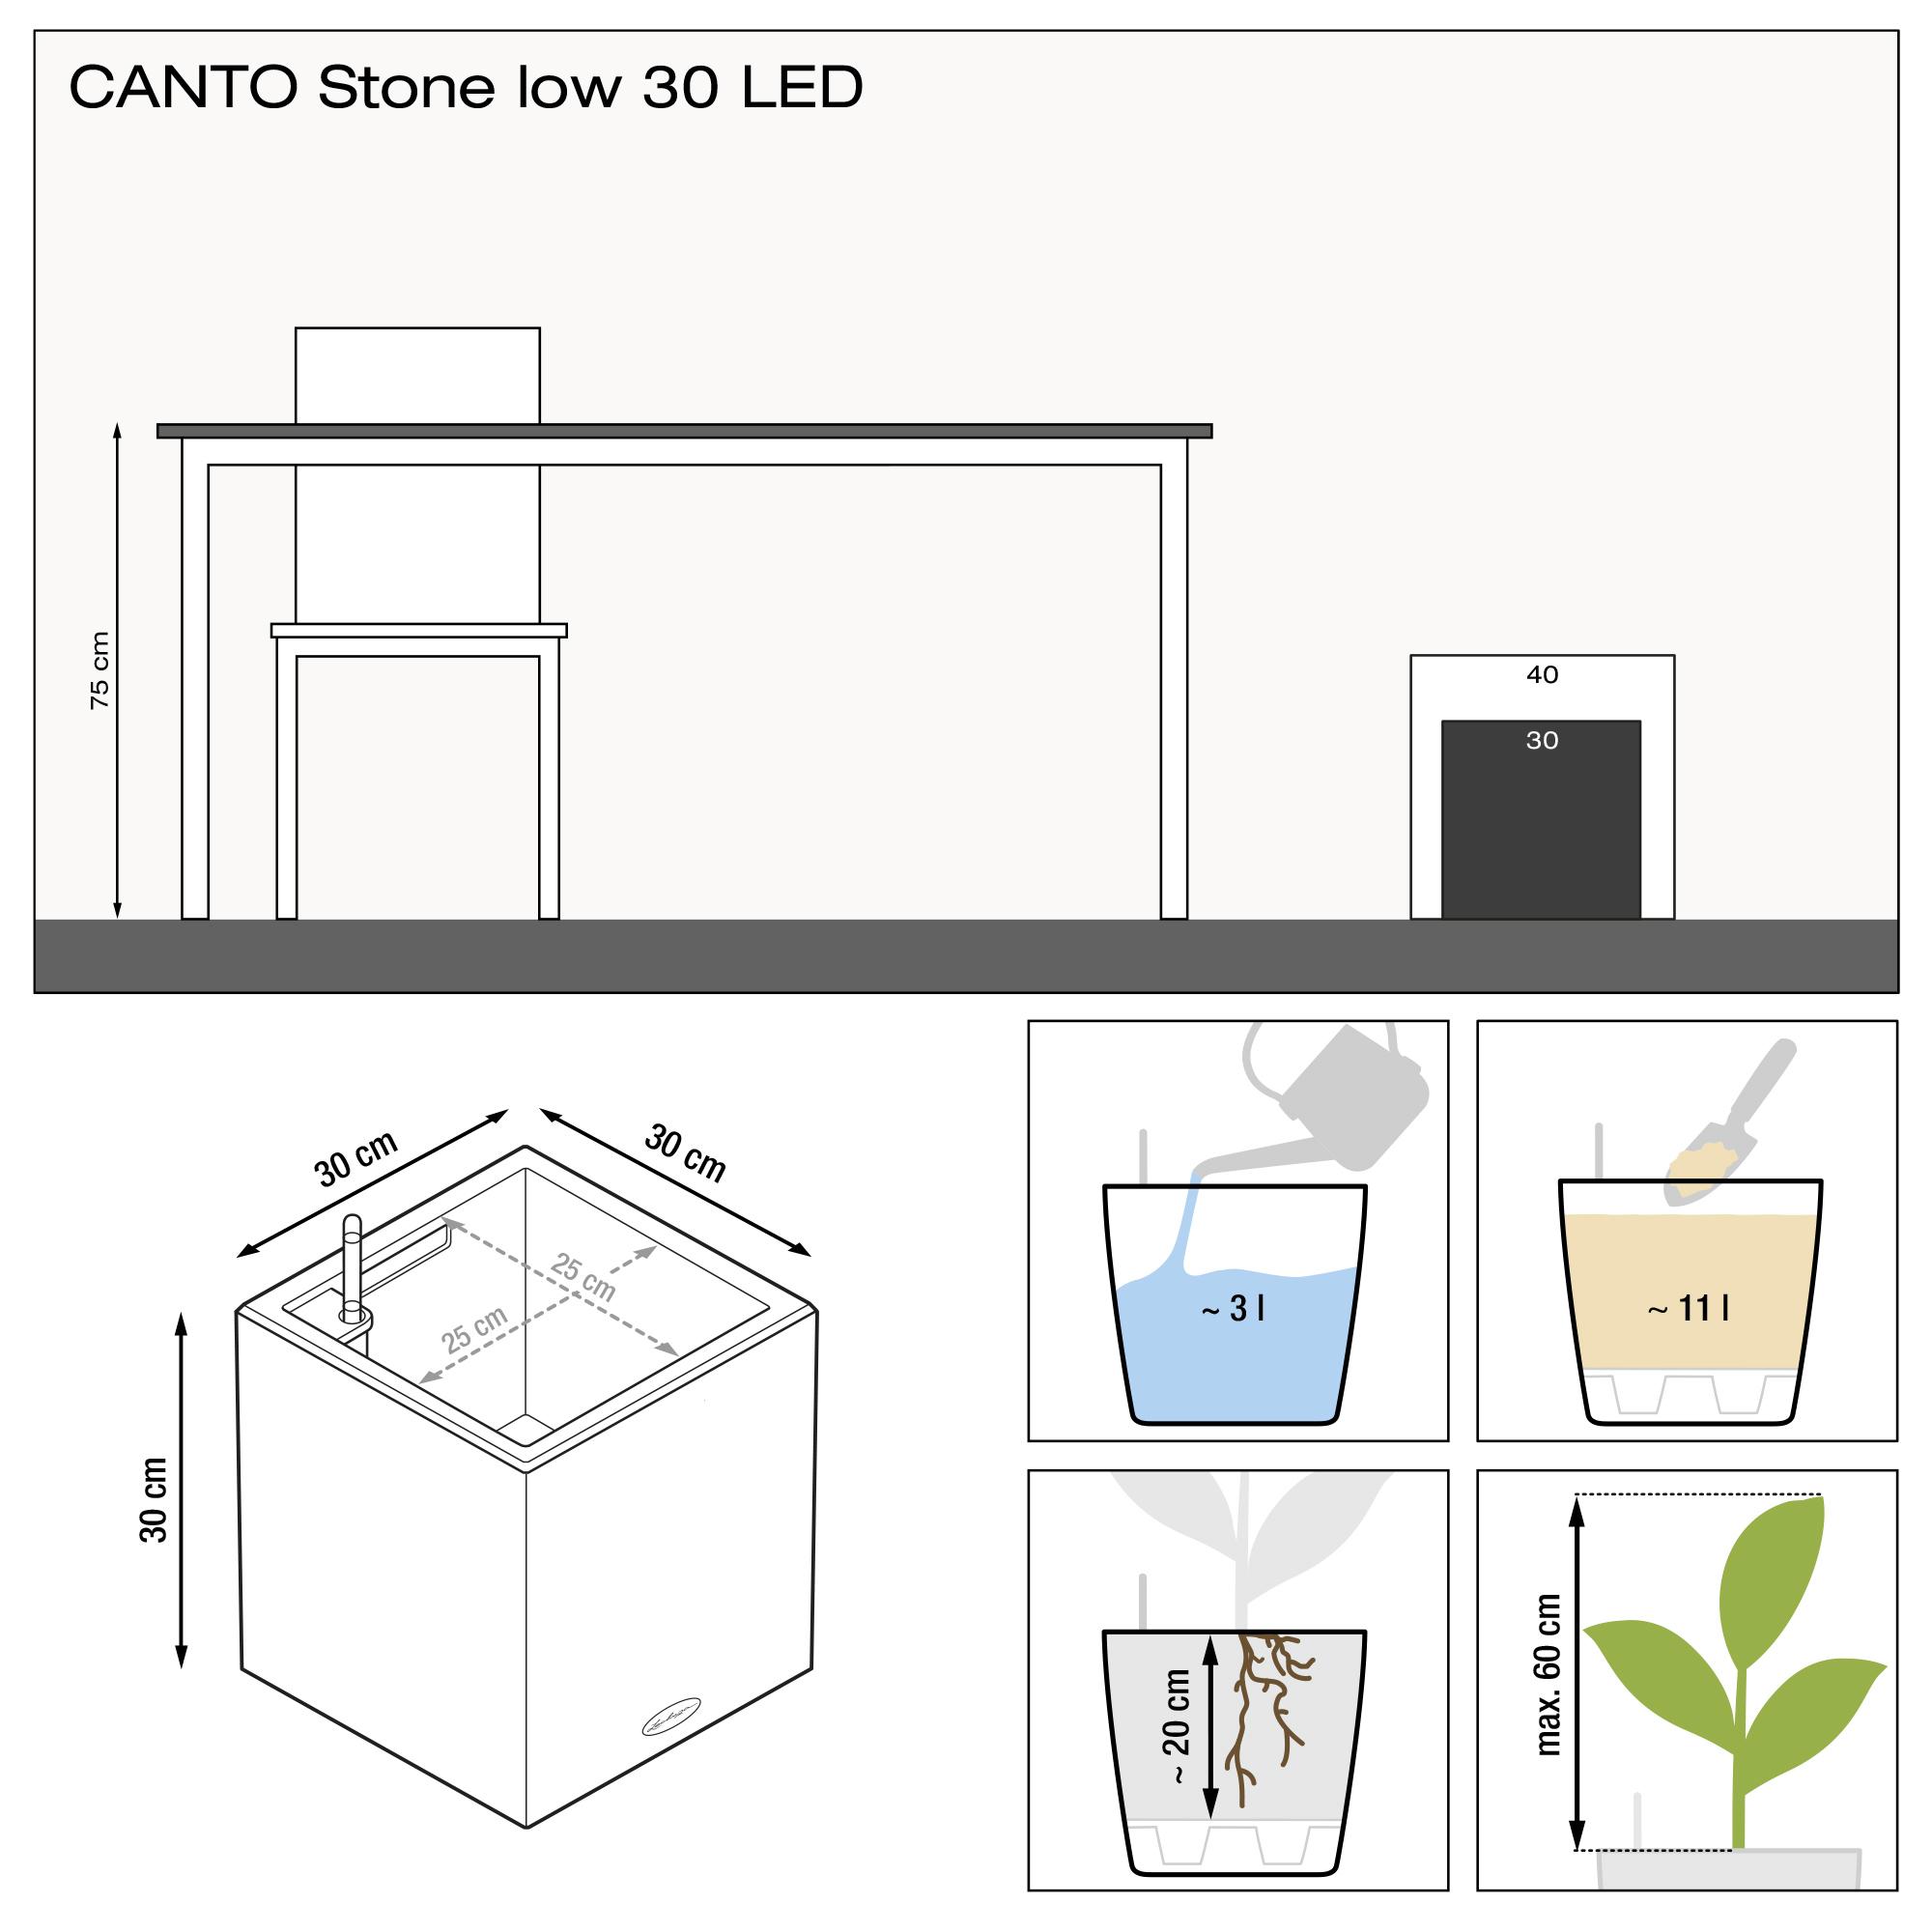 le_canto-stone-wuerfel30-led_product_addi_nz Thumb